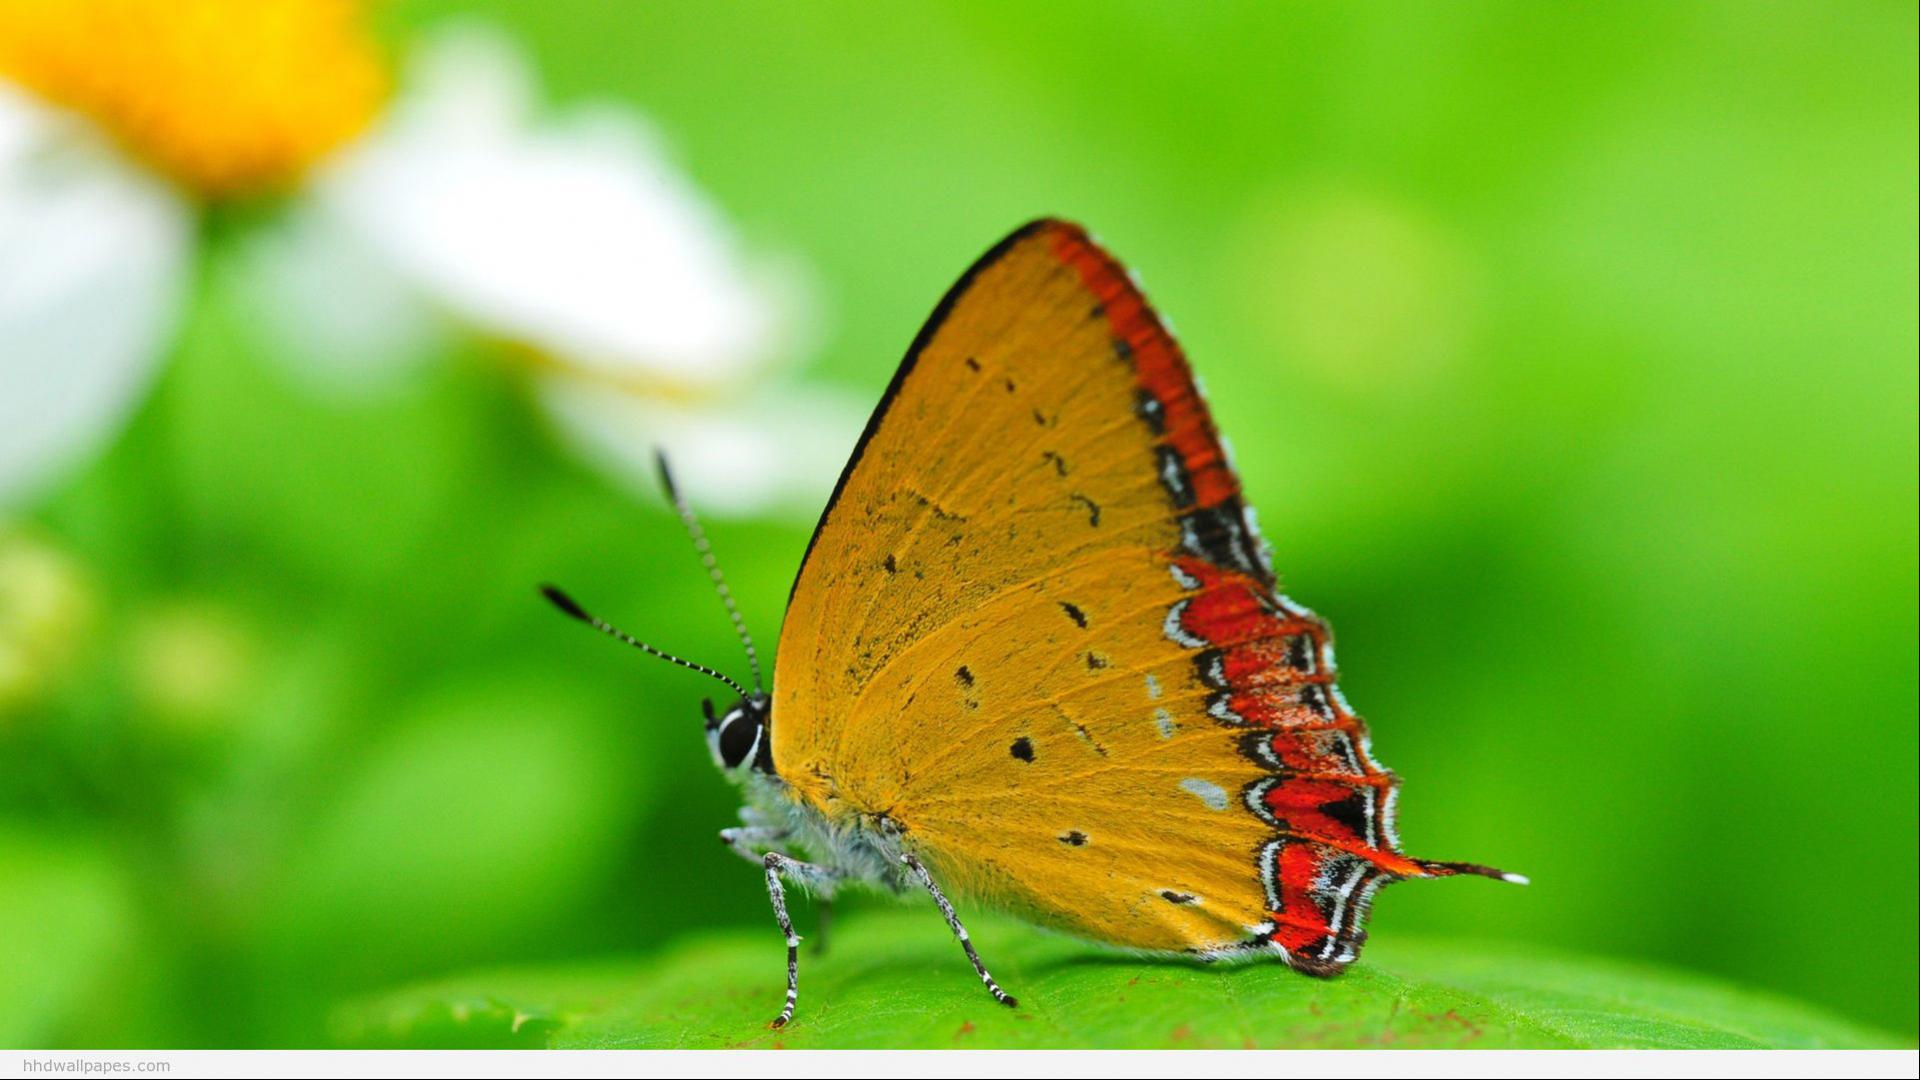 fondos de pantalla hd para pc 1080p descarga gratuita,polillas y mariposas,mariposa,insecto,invertebrado,lycaenid